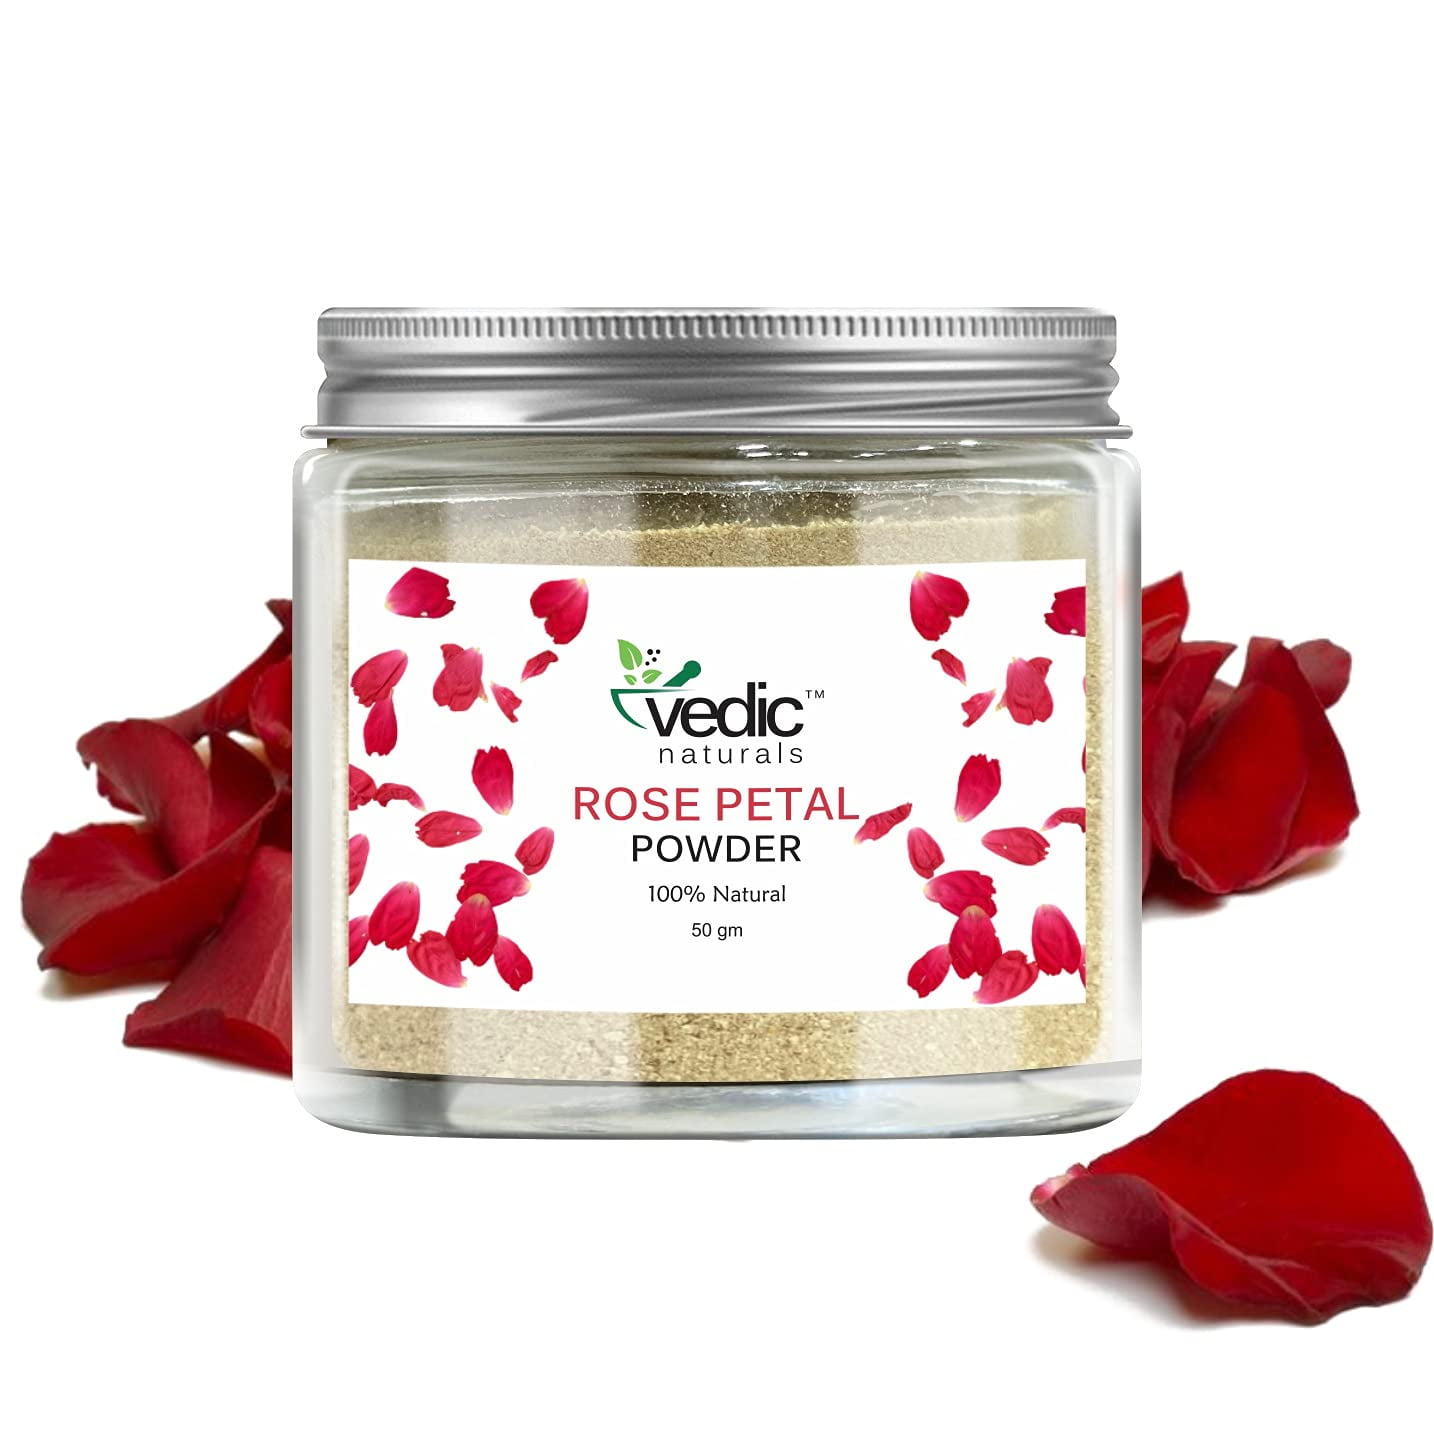 Vedic Naturals Rose Petal Powder 100% Natural, Skin Whitening